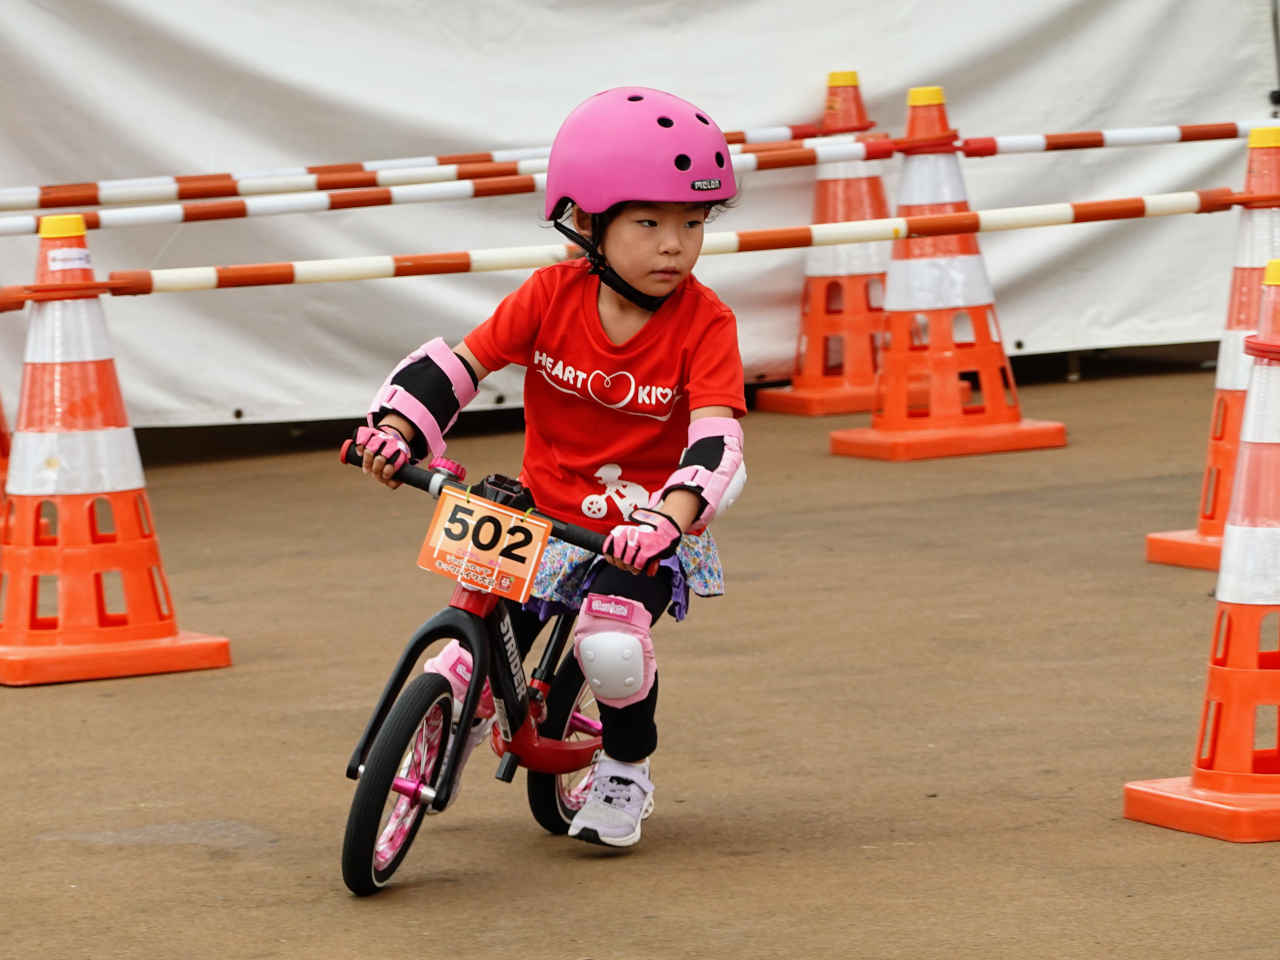 ストライダー大会のジャパンカップキックバイク大会 予備予選を快走する5歳の女の子